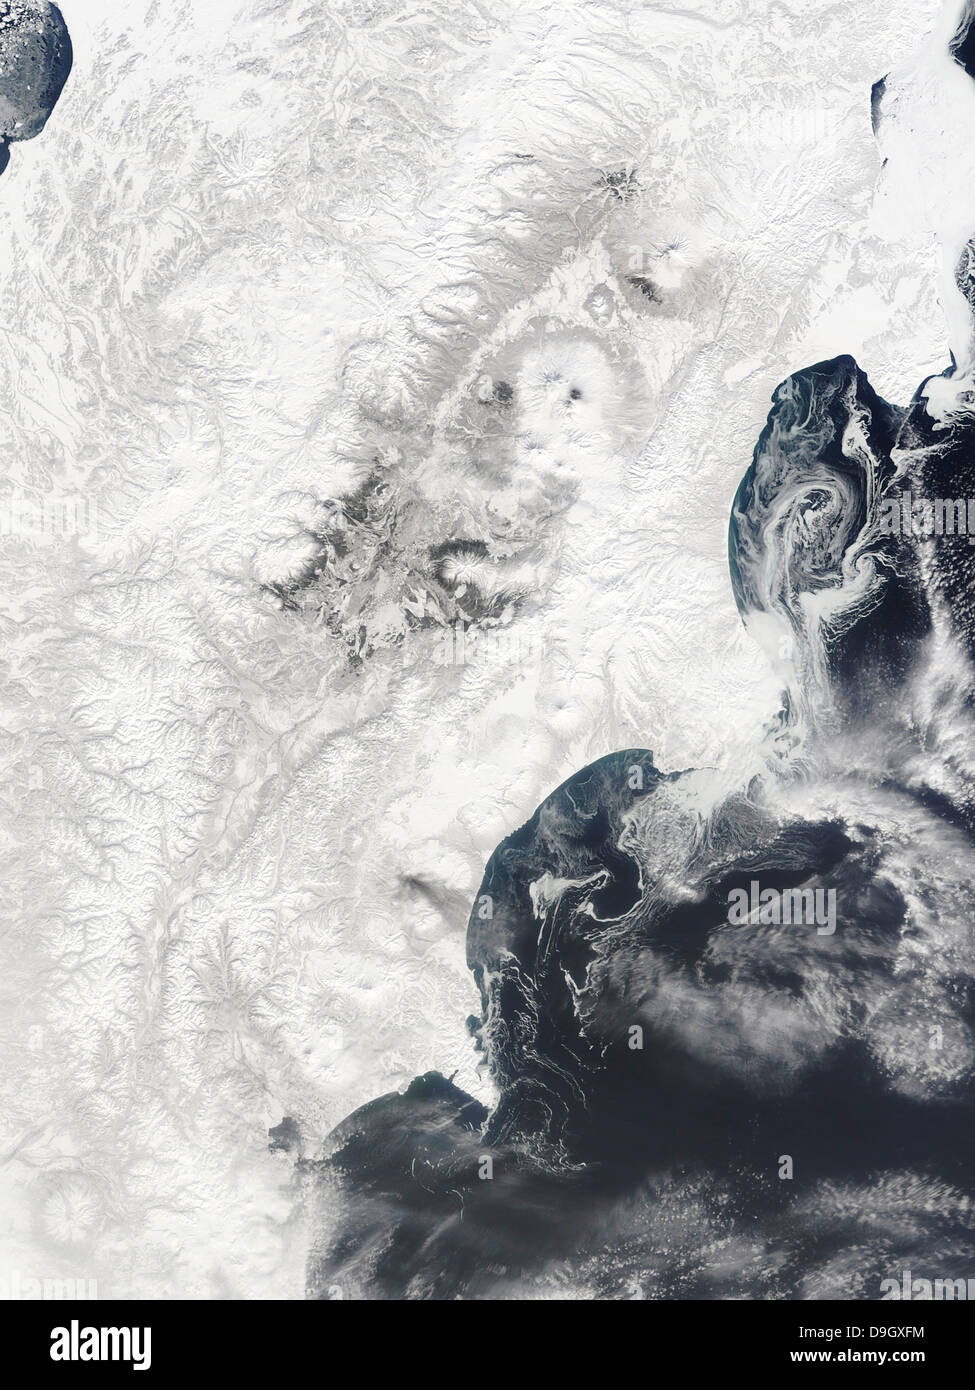 2 avril 2010 - Les volcans dans le centre de la péninsule du Kamtchatka, dans l'est de la Russie. Banque D'Images